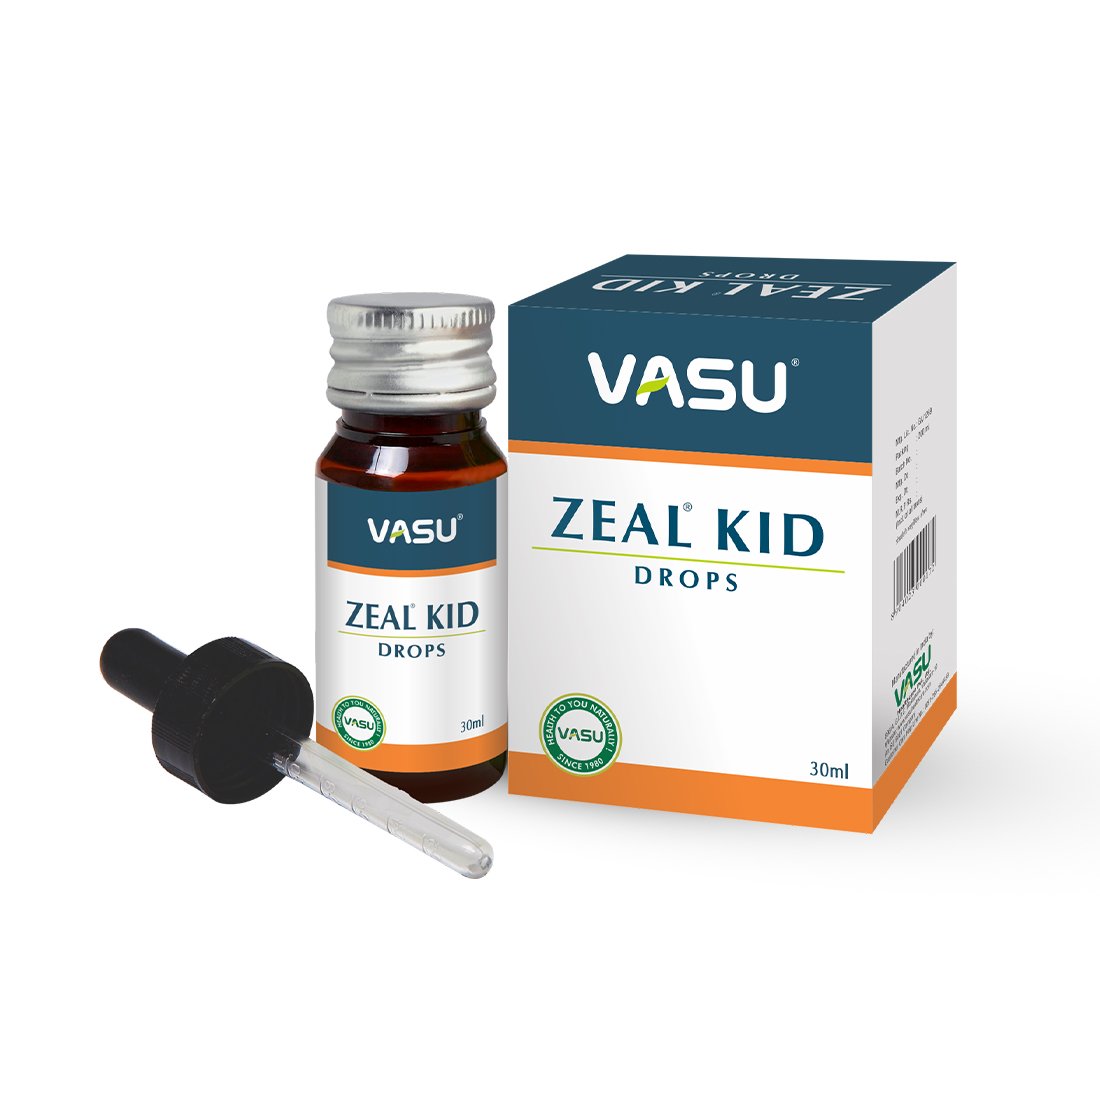 Buy Vasu Zeal Kid Drops at Best Price Online